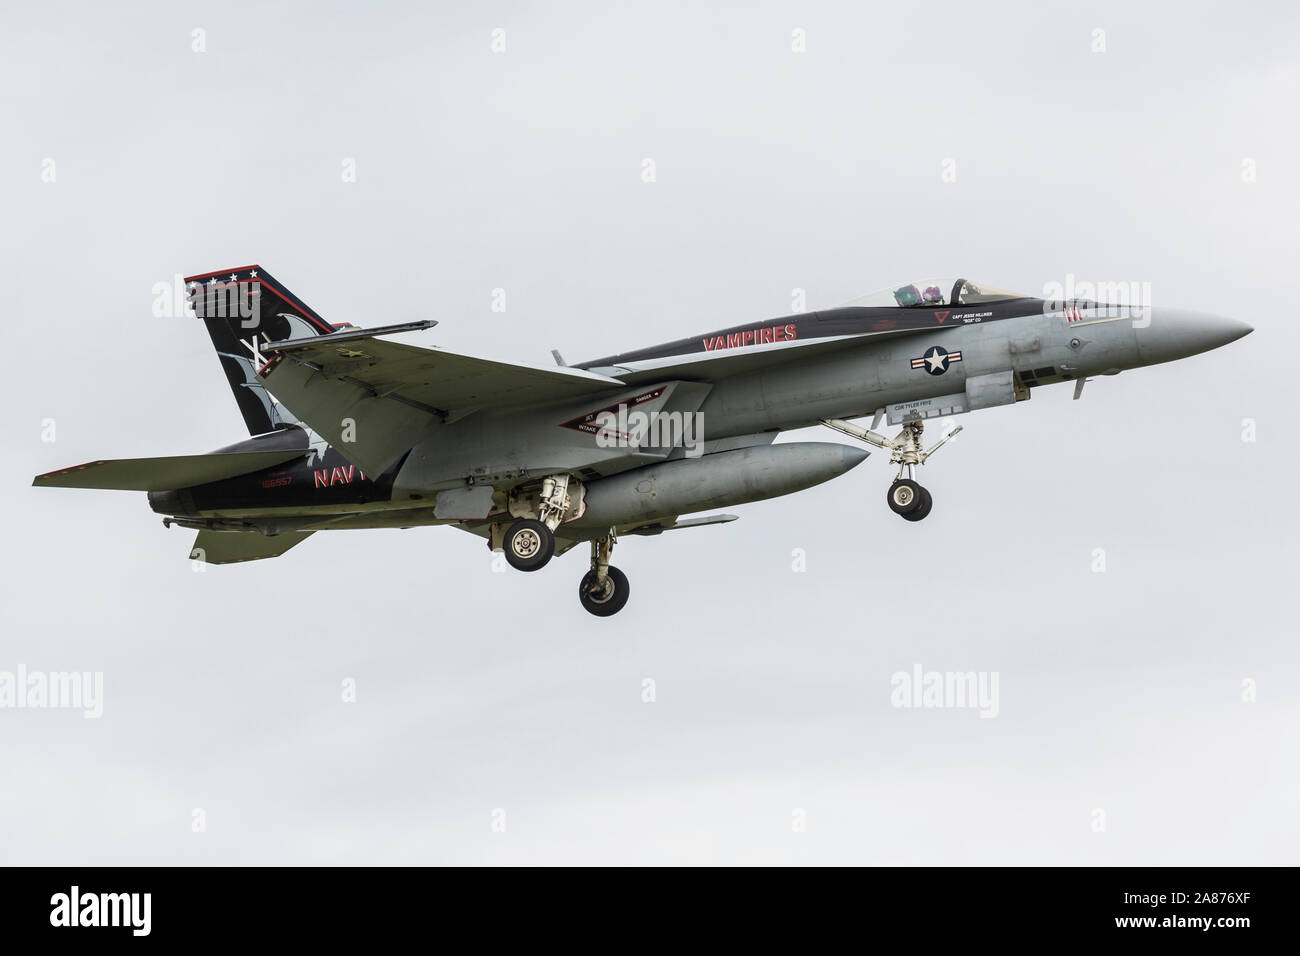 La Marina degli Stati Uniti F/A-18 Super Hornet arriva a 2018 Vectren Airshow di Dayton, dove sarà messo in mostra statica. Foto Stock